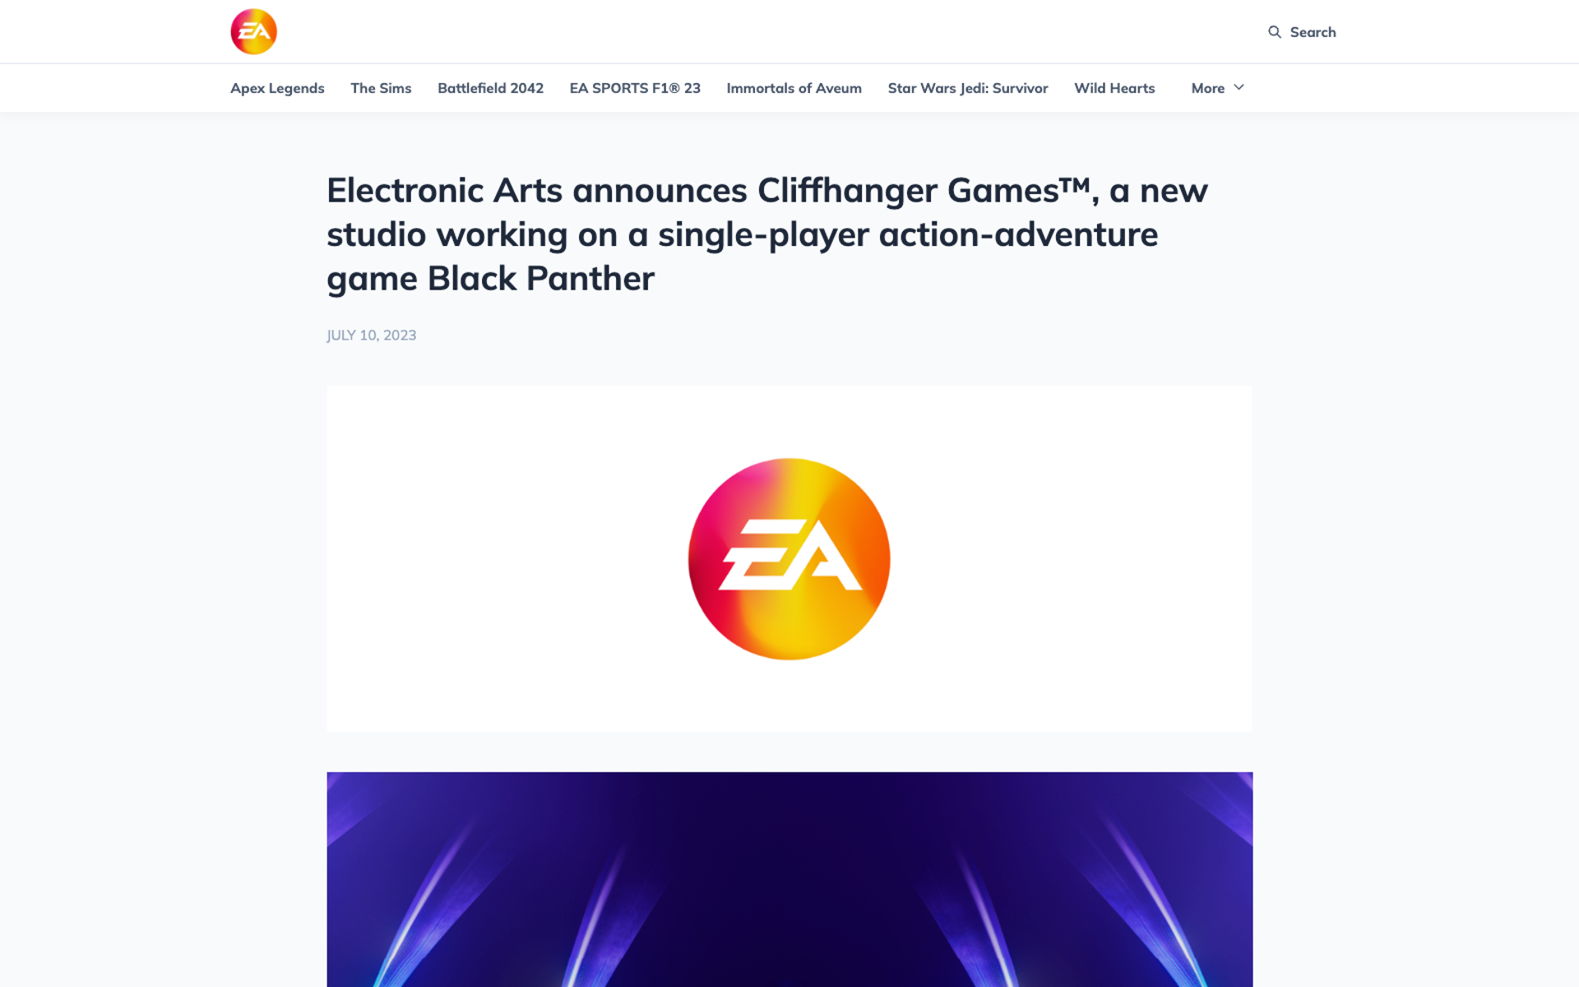 EA games drops a big announcement